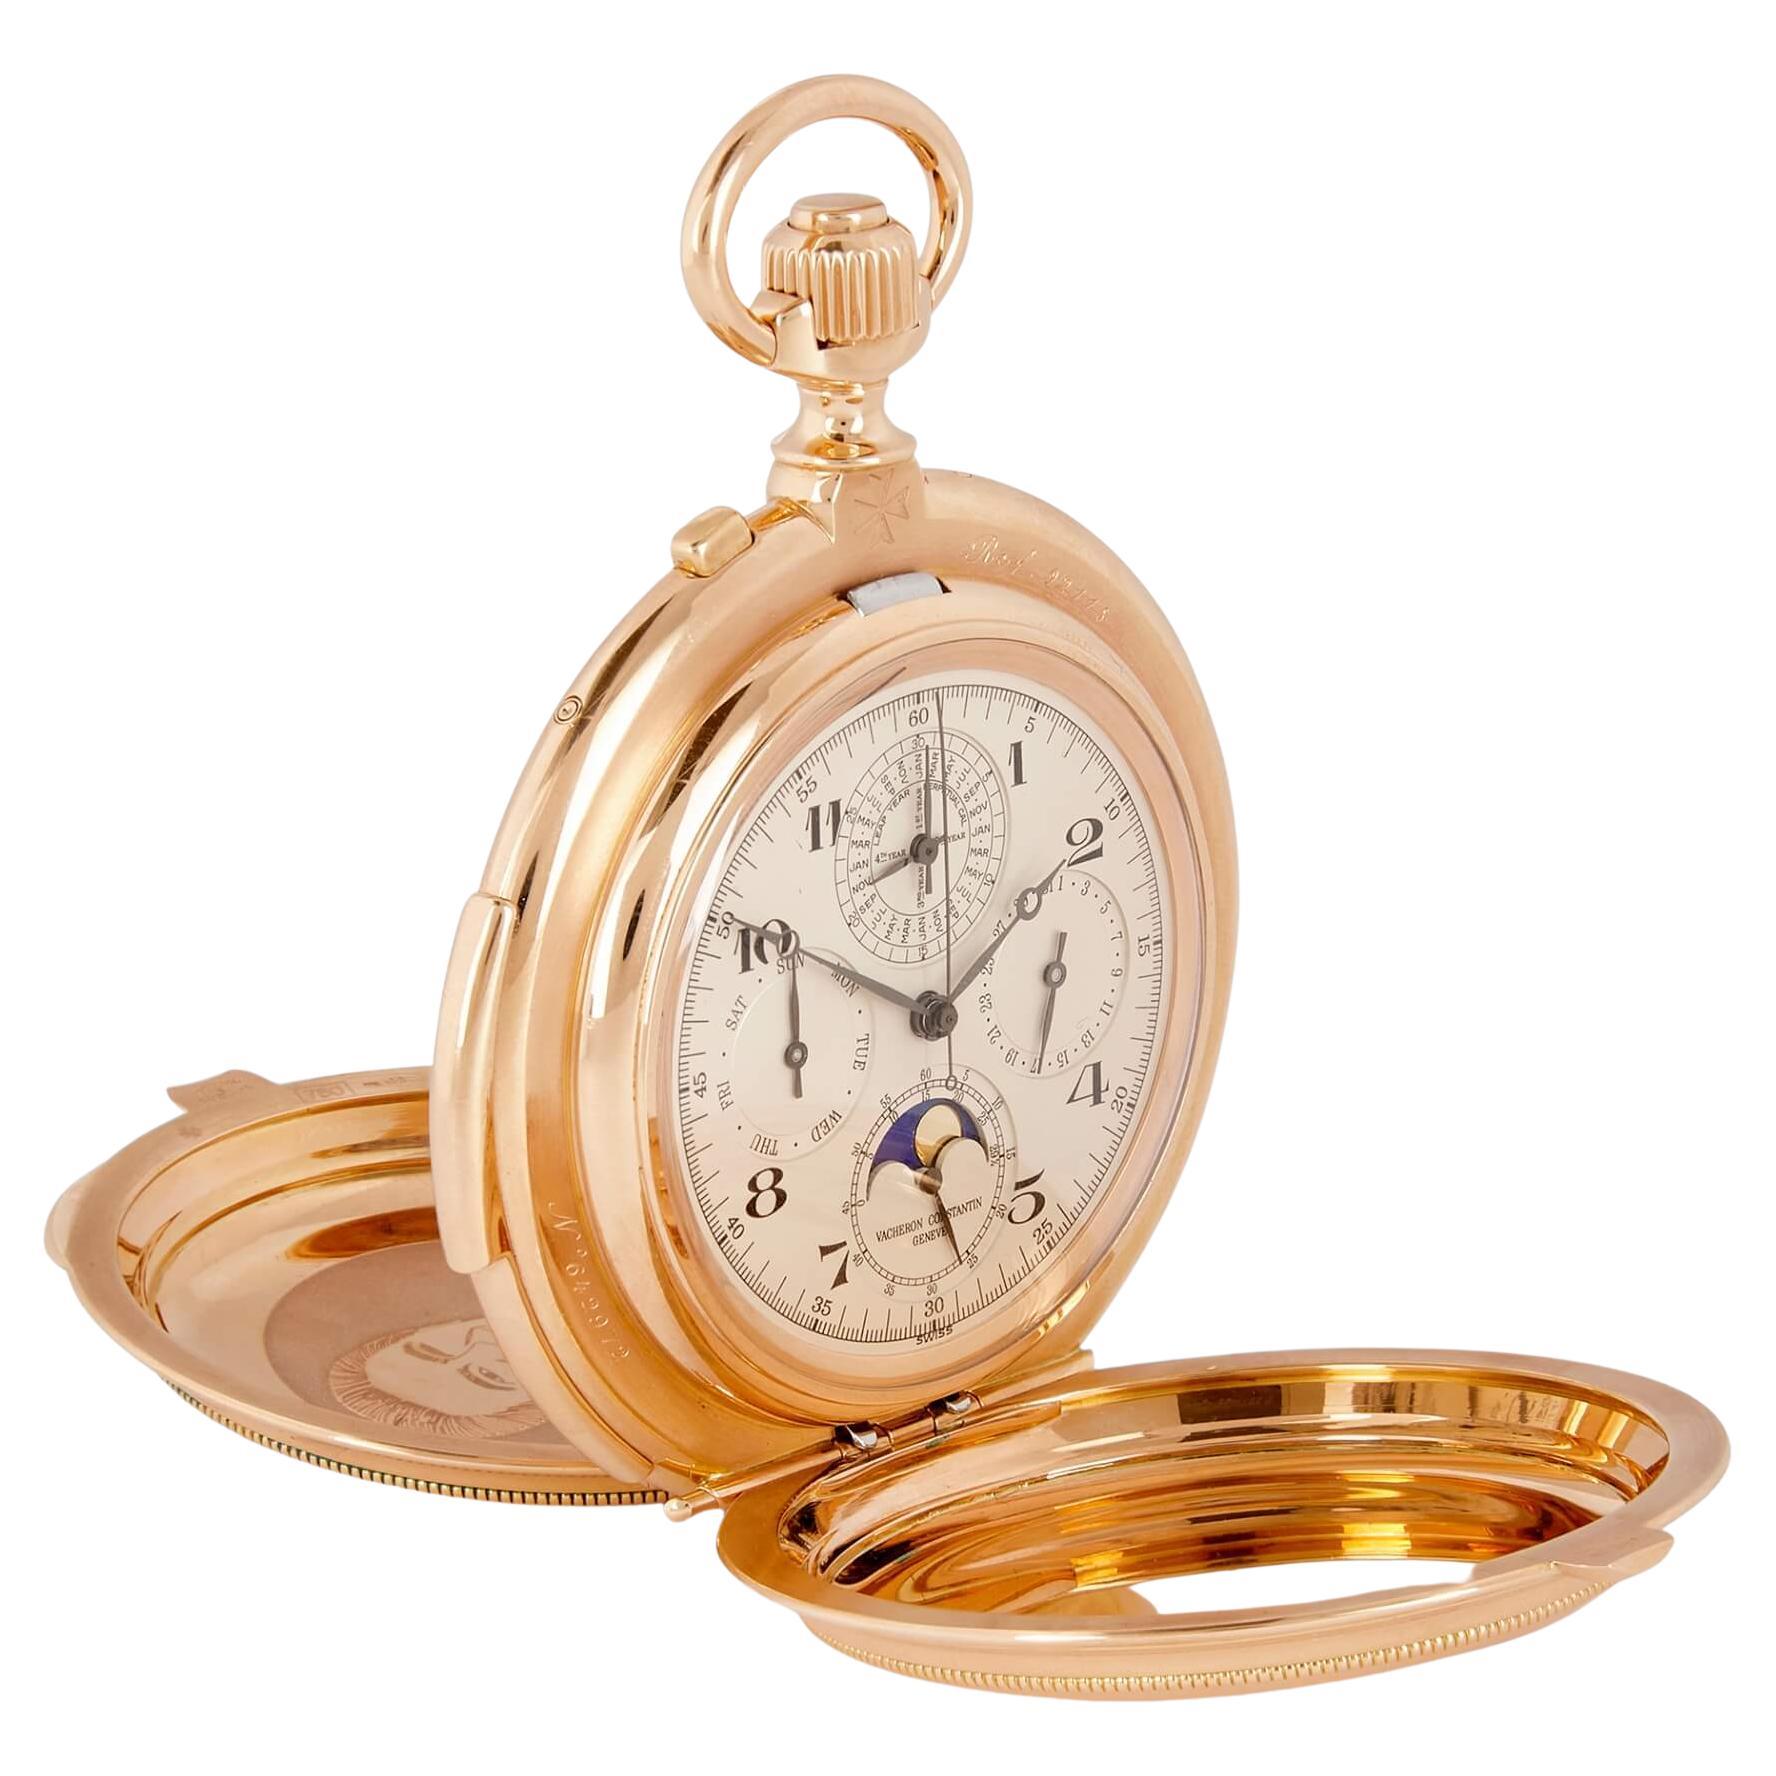 Vacheron Constantin, très belle montre à gousset unique en or rose 18 carats, réf. 92115